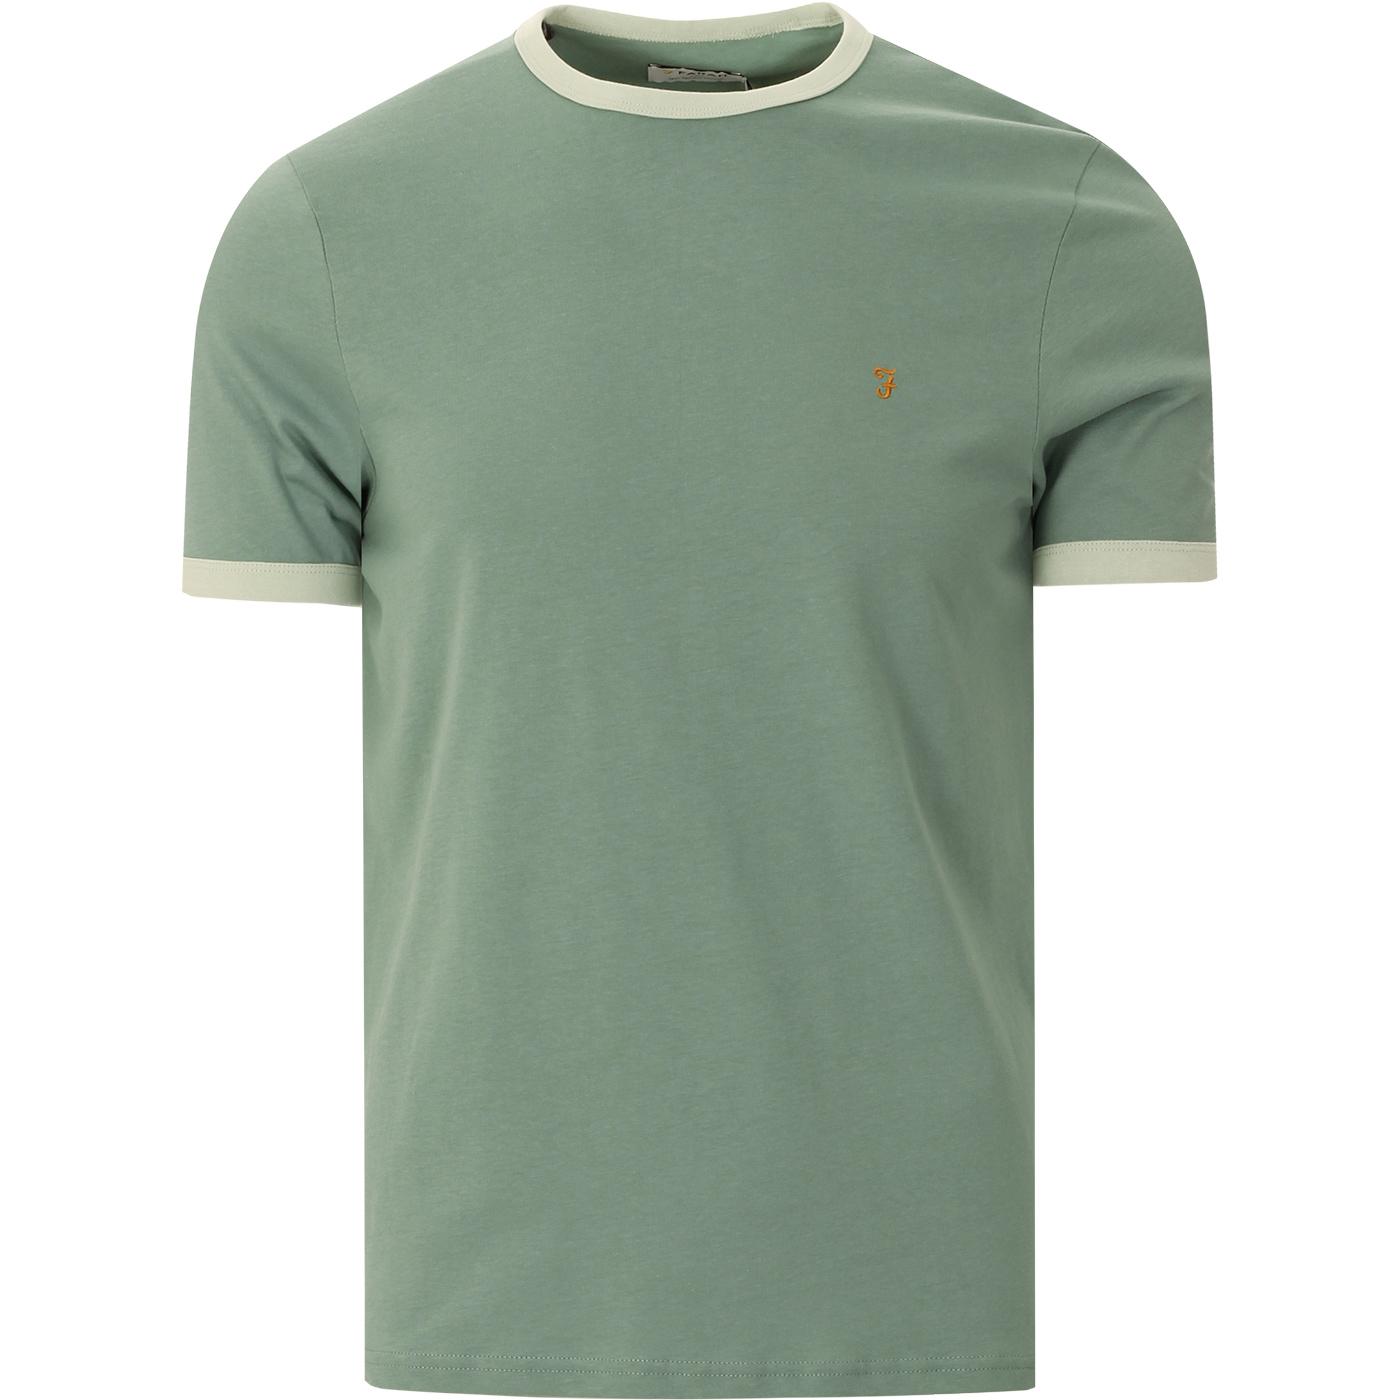 FARAH Groves Men's Retro Mod Ringer T-shirt in Jade